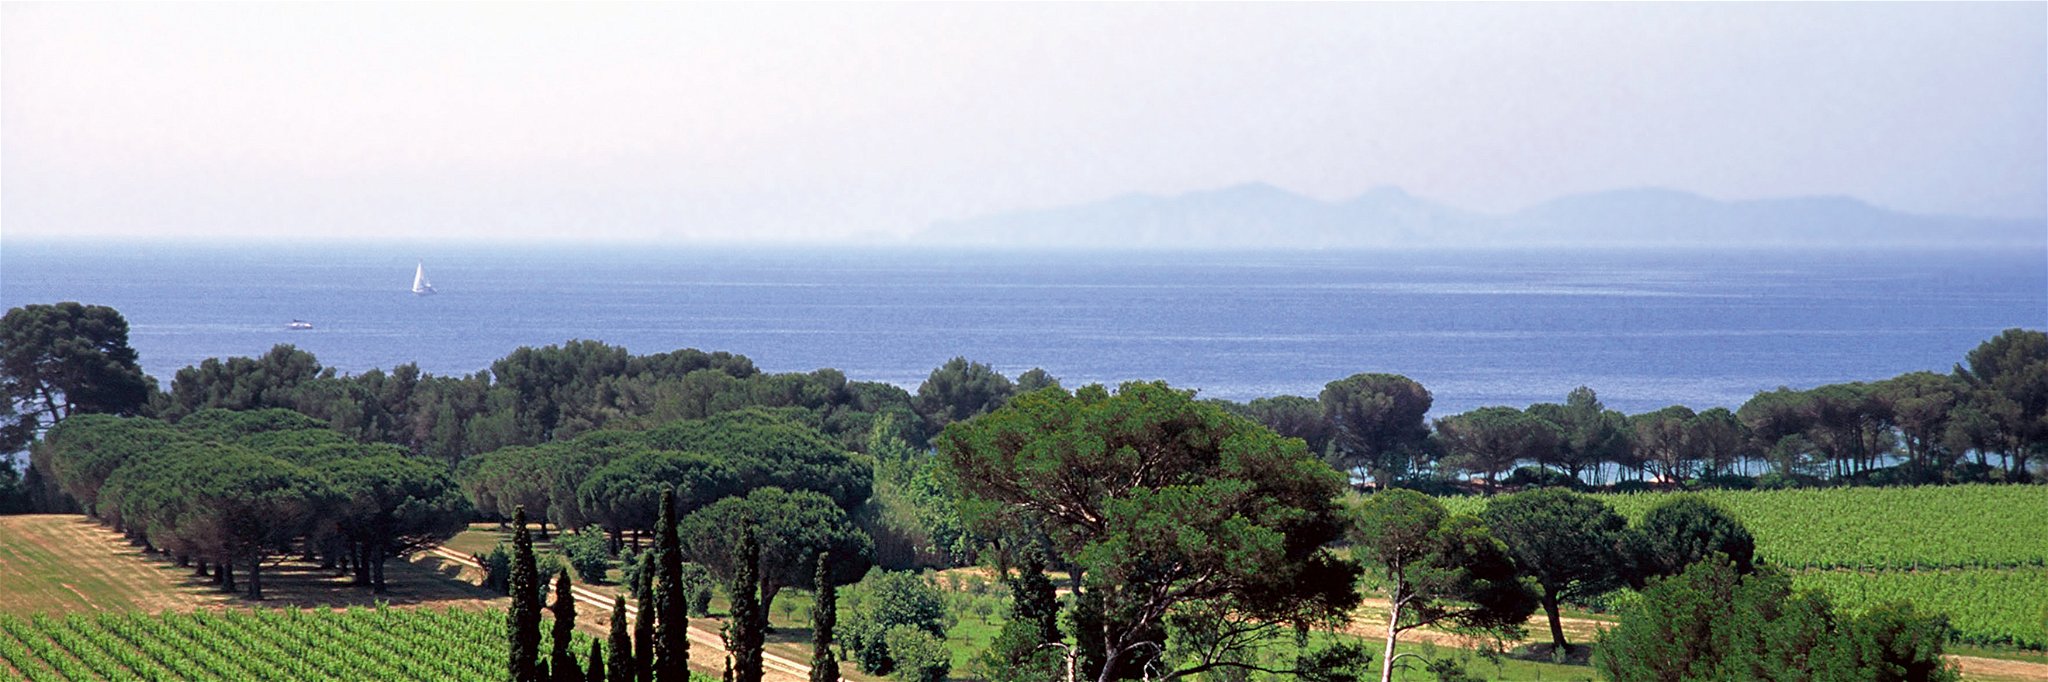 Blaues Wasser und grüne Reben: Die Provence verfügt über Weinberge in Sichtweite des Meers.